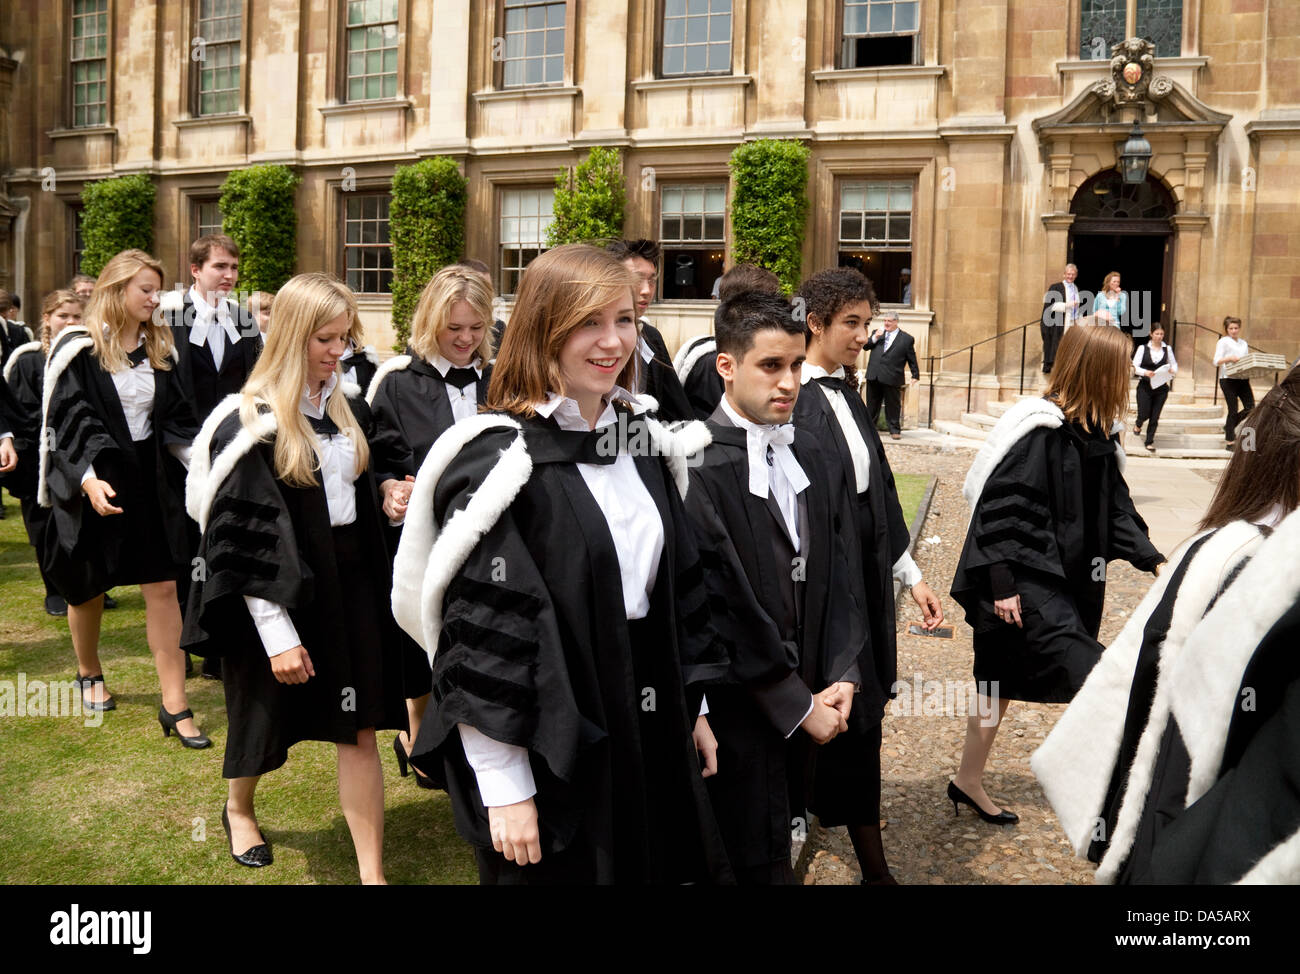 Abschlussfeier am Abschlusstag, Clare College Cambridge Universität Absolventen, England UK Stockfoto